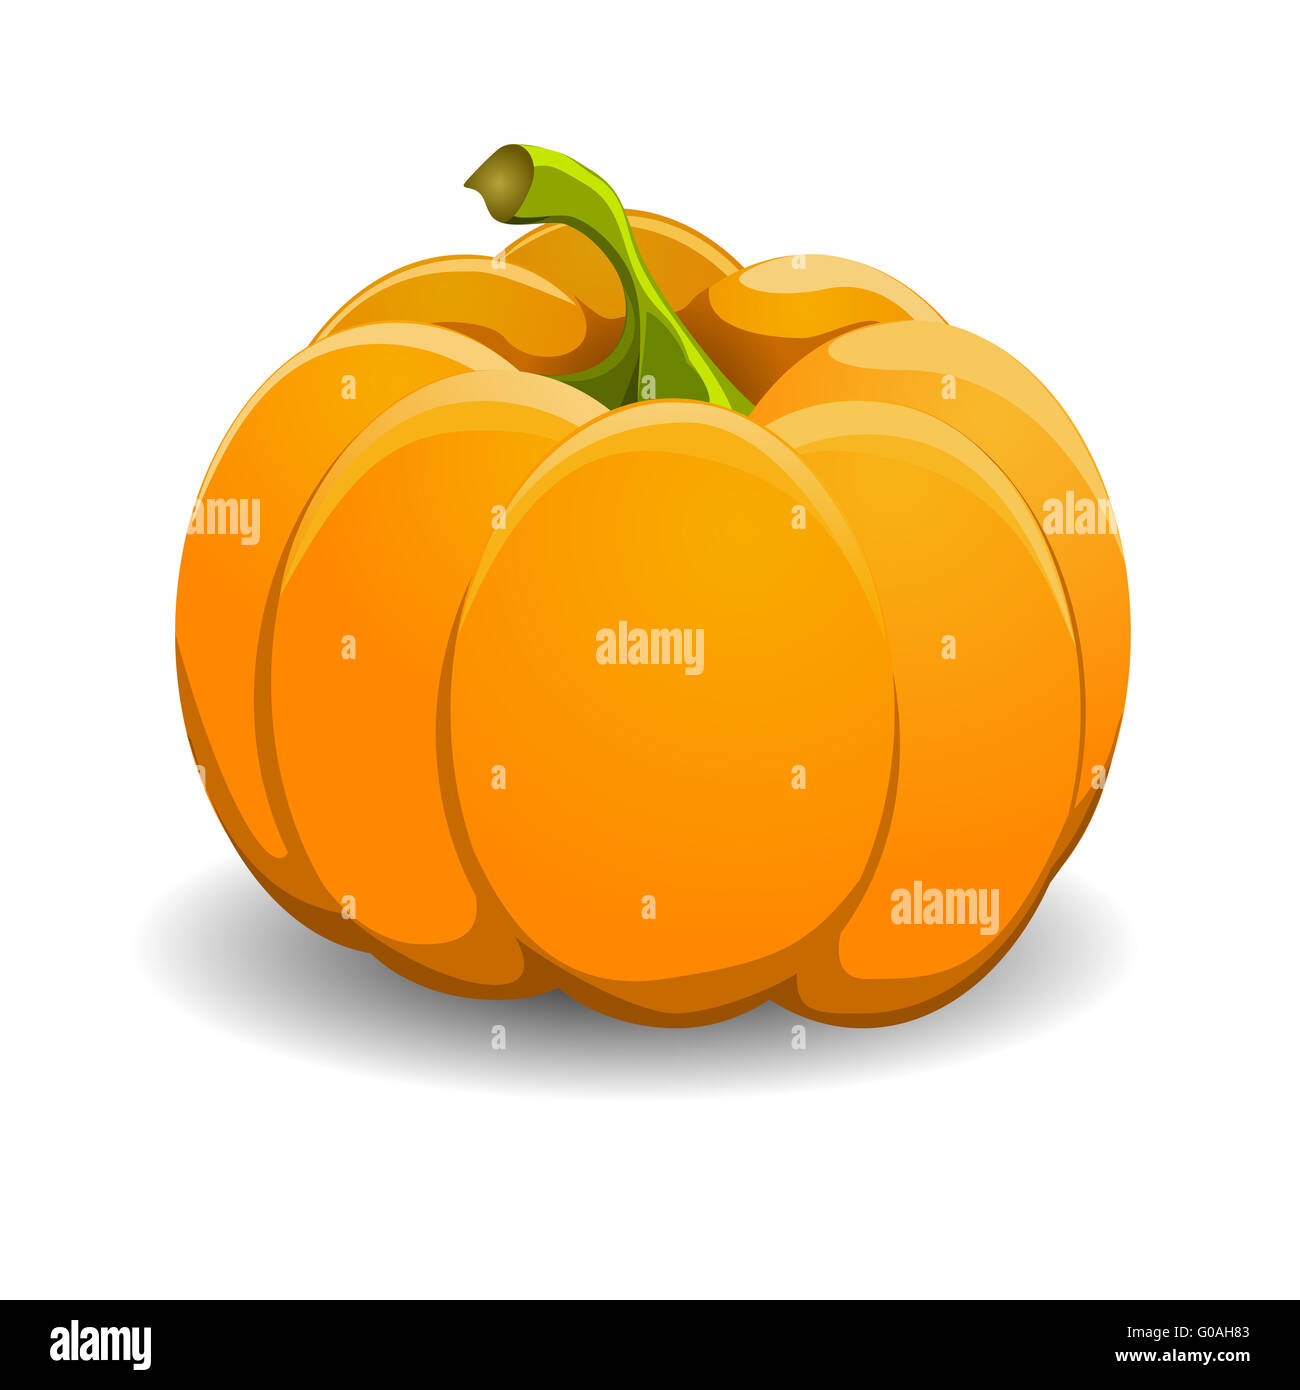 Pumpkin isolated on white. vector illustration. Stock Photo